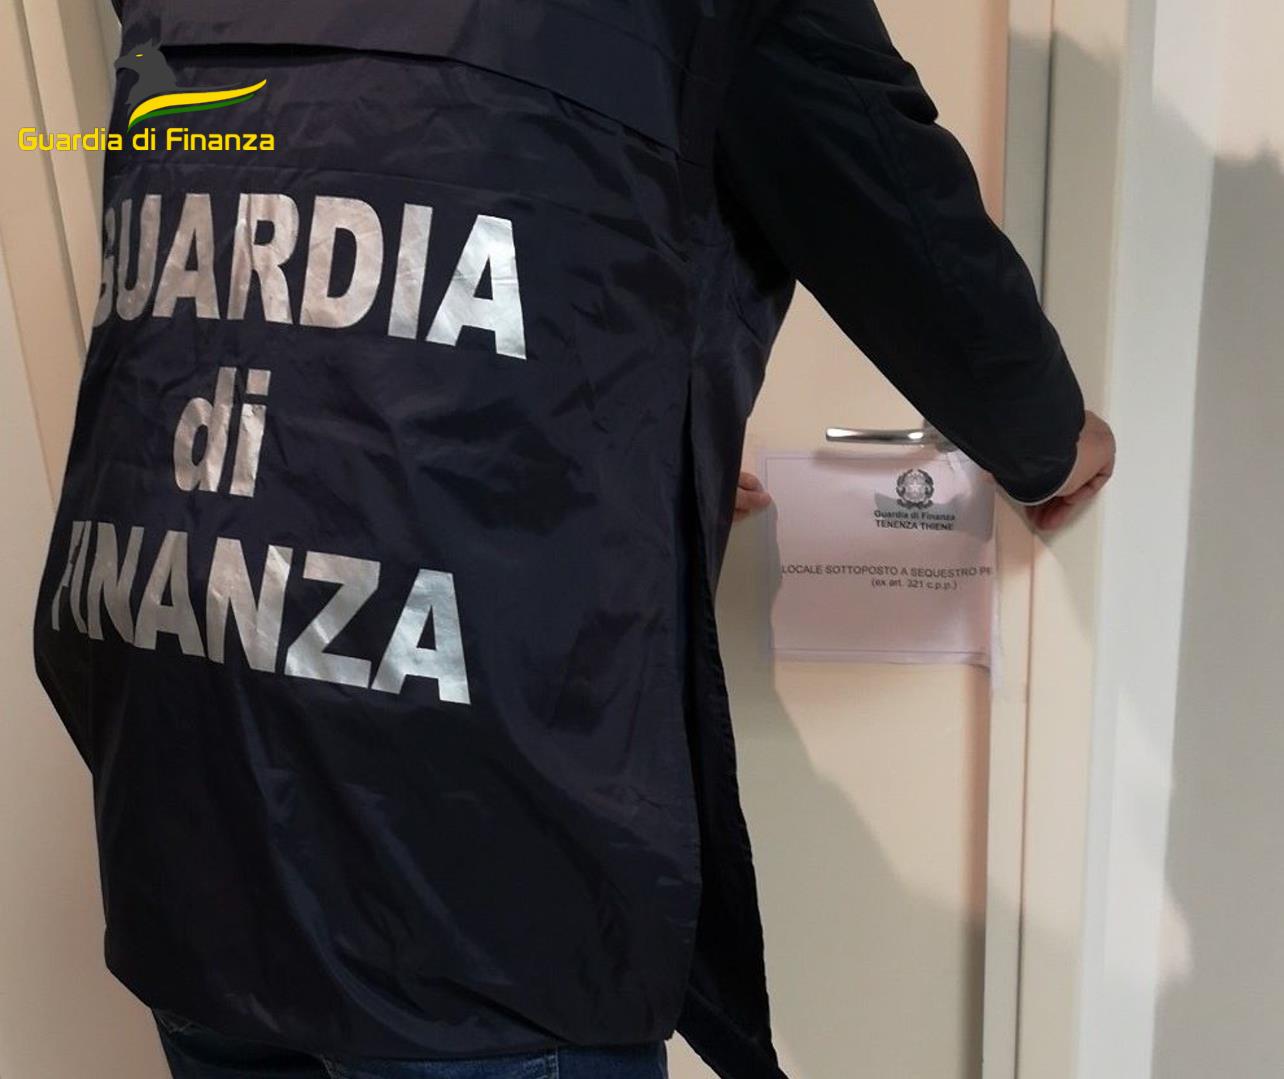 Esercizio abusivo della professione a Breganze, GdF Vicenza sequestra ambulatorio medico odontoiatrico